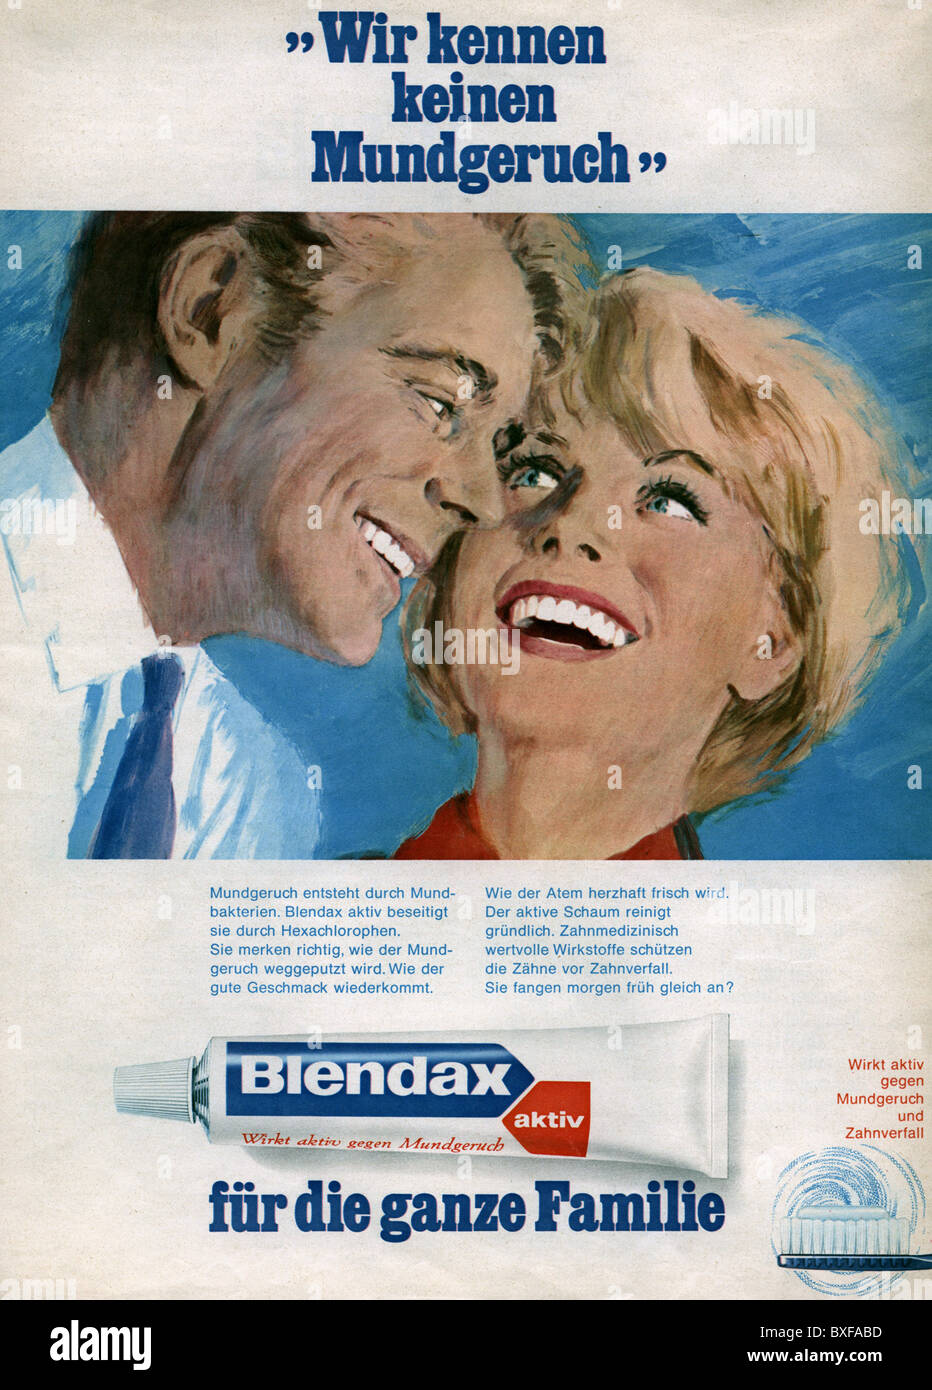 Publicité, hygiène dentaire / soins dentaires, dentifrice Blendax aktiv,  publicité du magazine 'Quick', Allemagne, vers 1970, droits  supplémentaires-Clearences-non disponible Photo Stock - Alamy